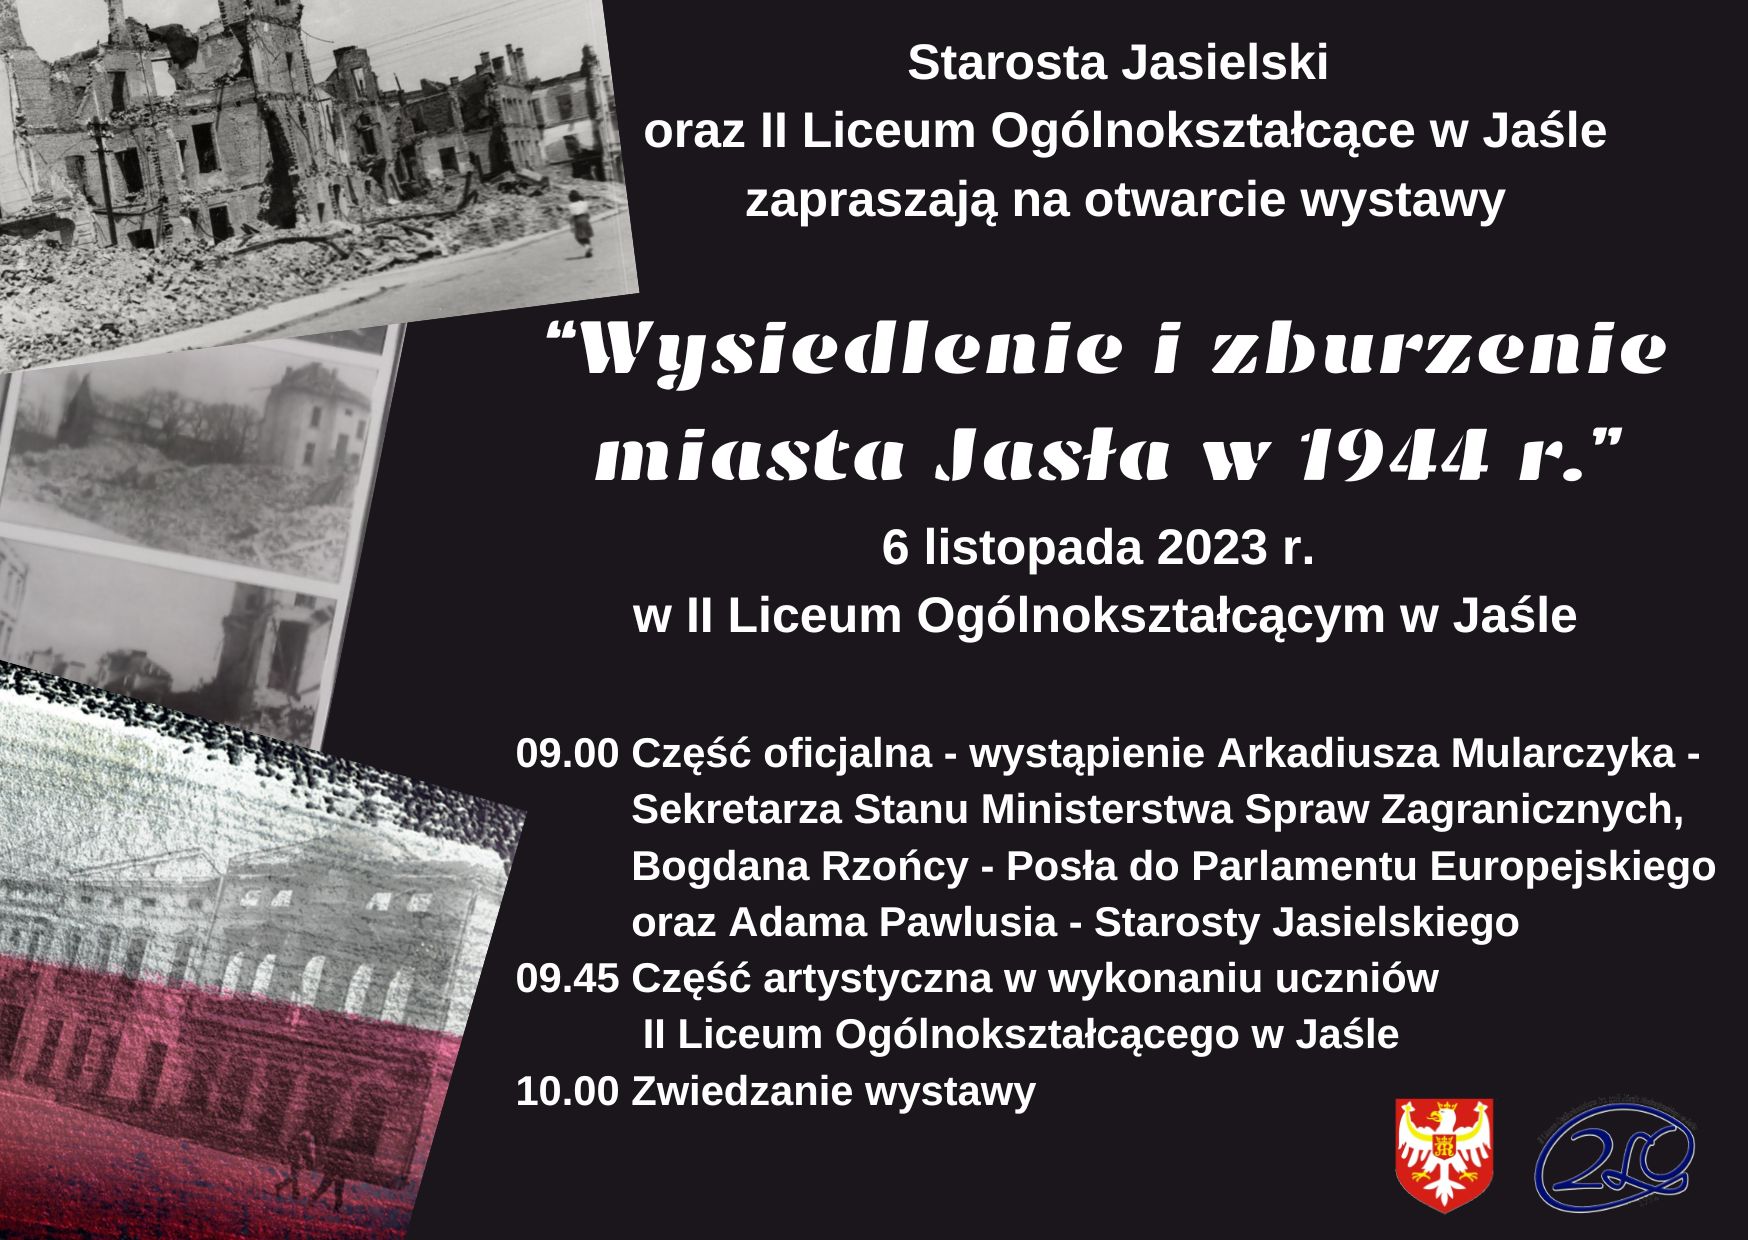 Otwarcie wystawy „Wysiedlenie i zburzenie miasta Jasła w 1944 r.” w II Liceum Ogólnokształcącym w Jaśle